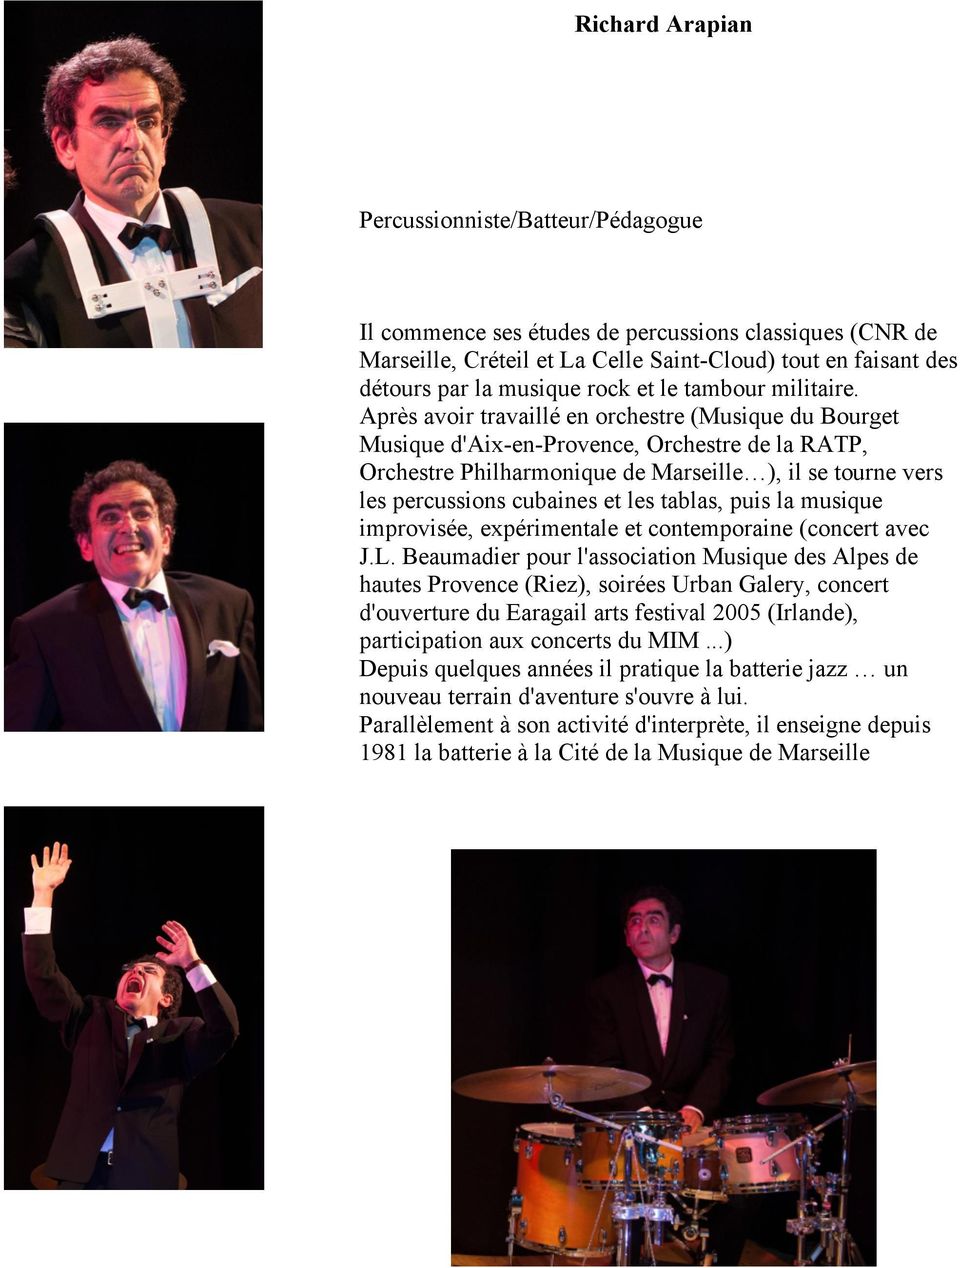 Après avoir travaillé en orchestre (Musique du Bourget Musique d'aix-en-provence, Orchestre de la RATP, Orchestre Philharmonique de Marseille ), il se tourne vers les percussions cubaines et les